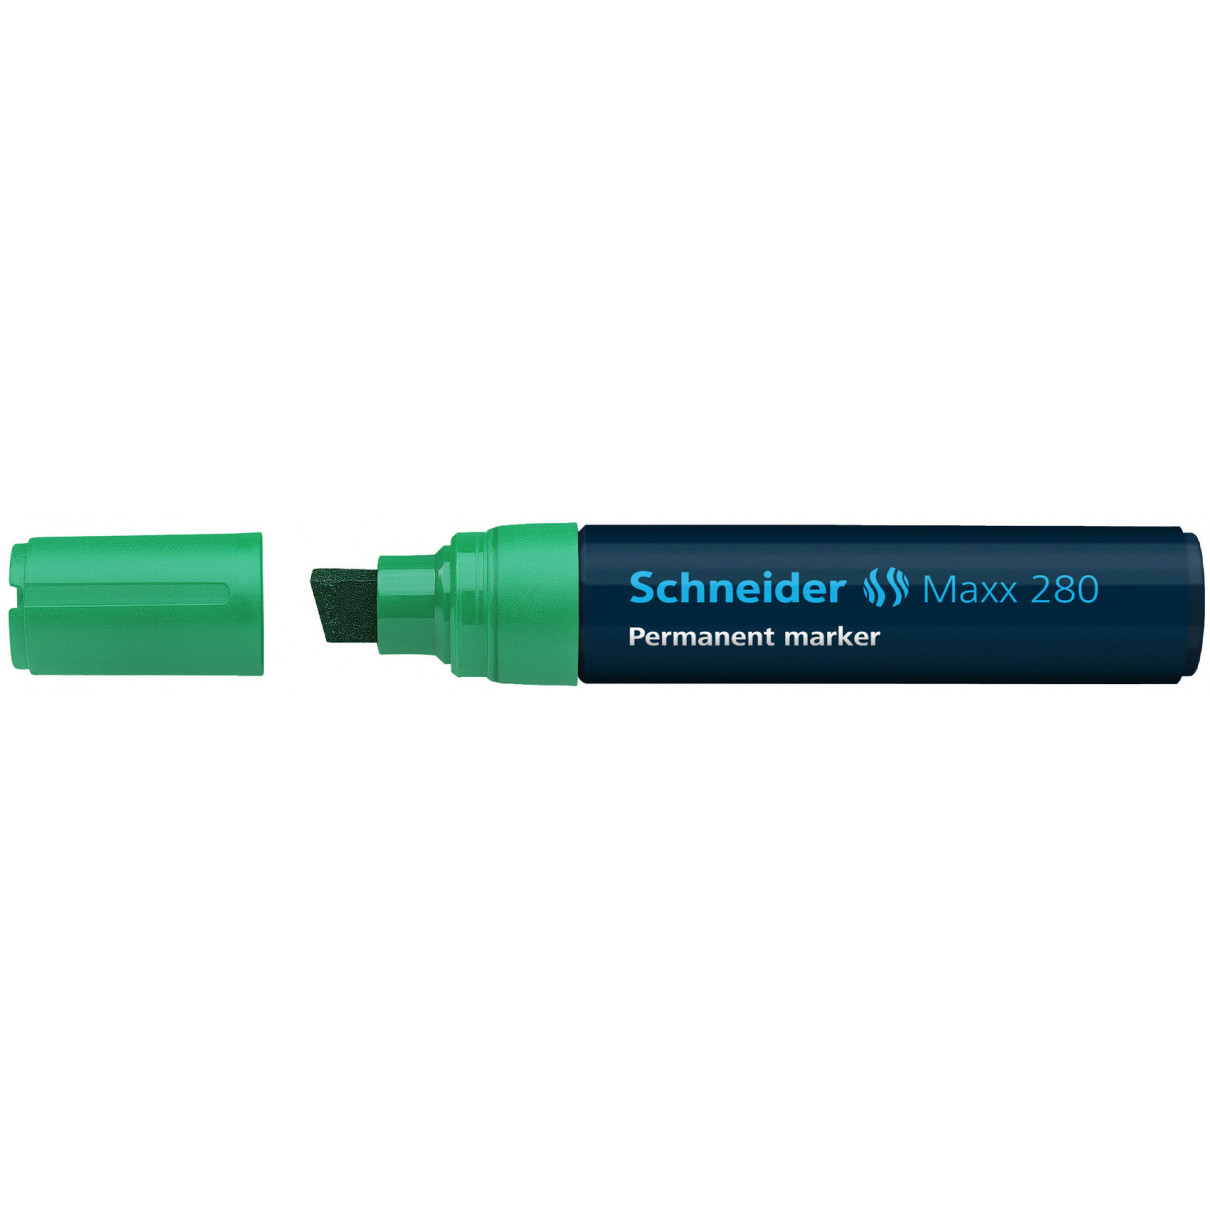 Schneider Maxx 280 Permanent Marker